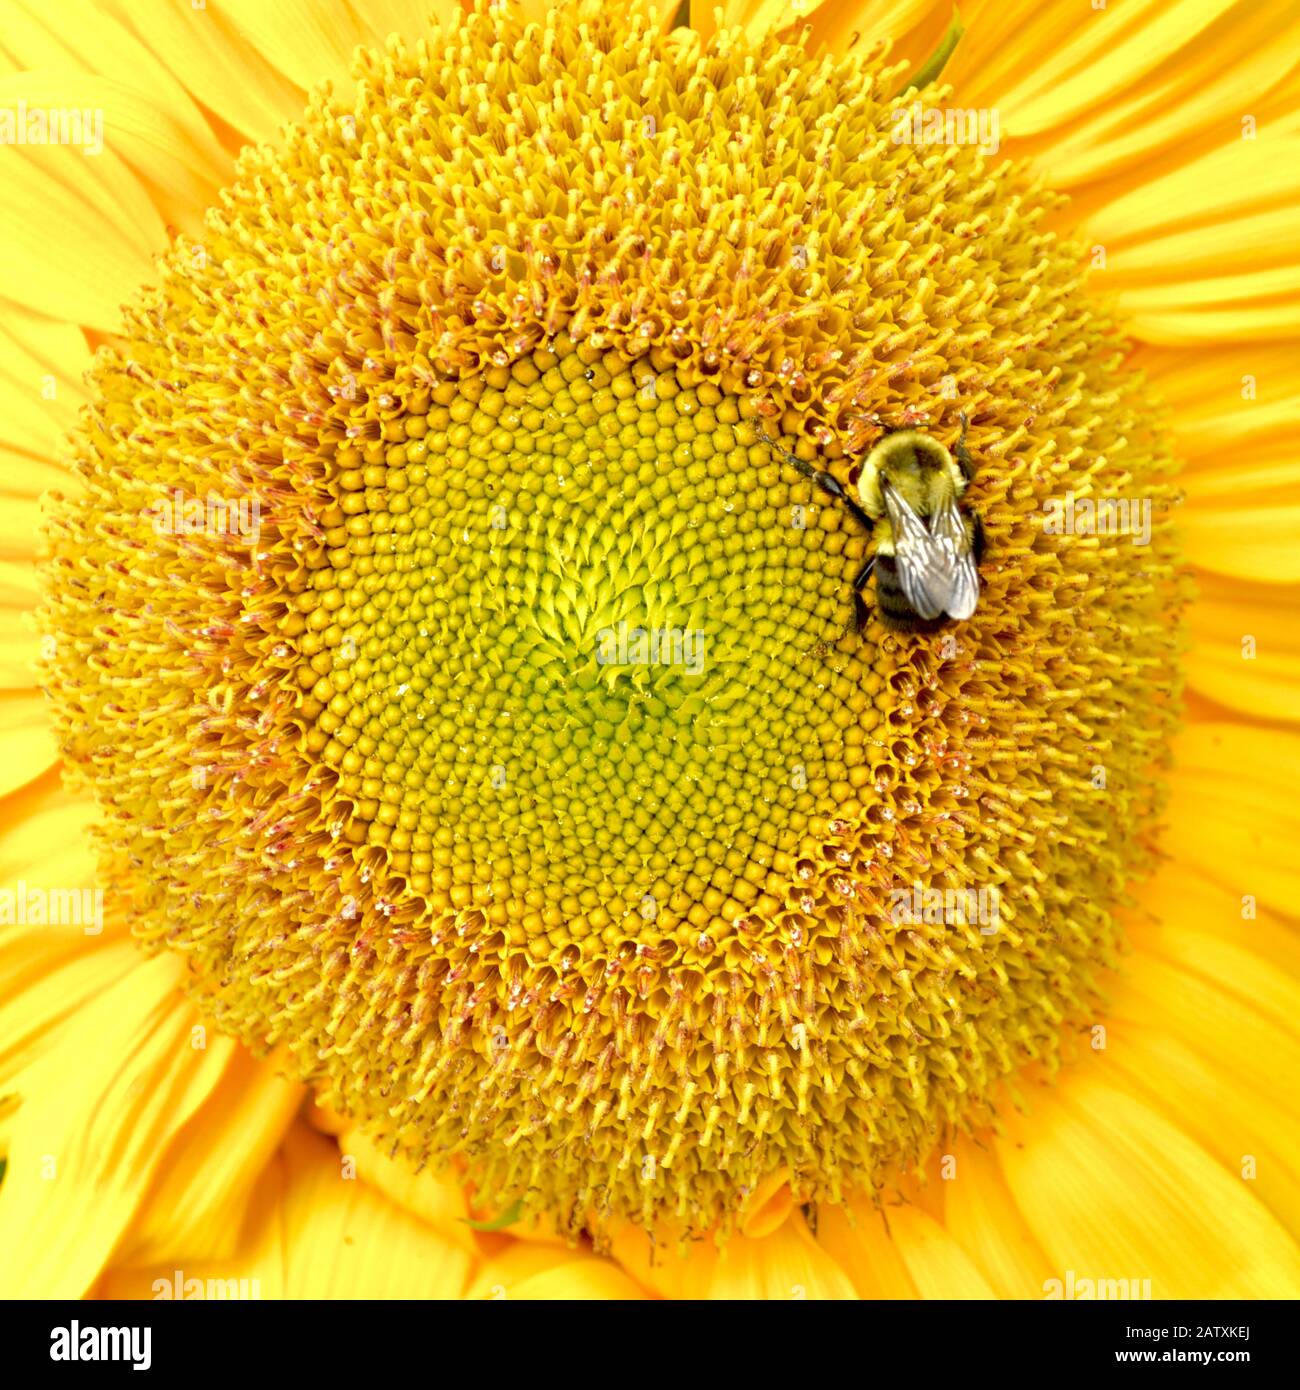 Gros plan d'une abeille pollinisant un fleuron sur le visage d'un brillant tournesol jaune. Banque D'Images